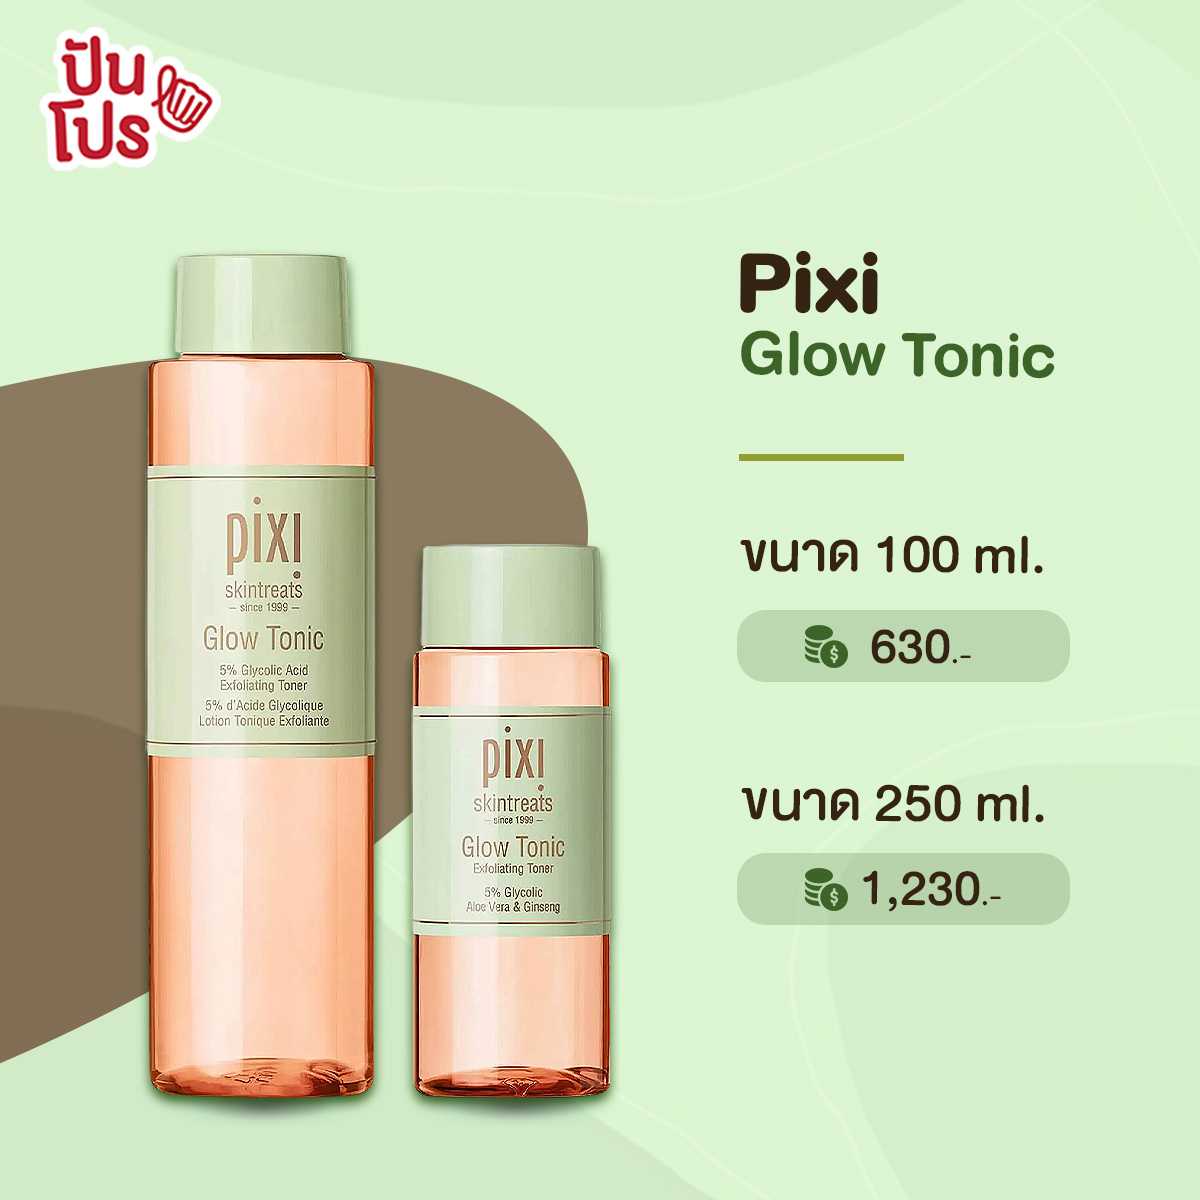 Pixi glow tonic